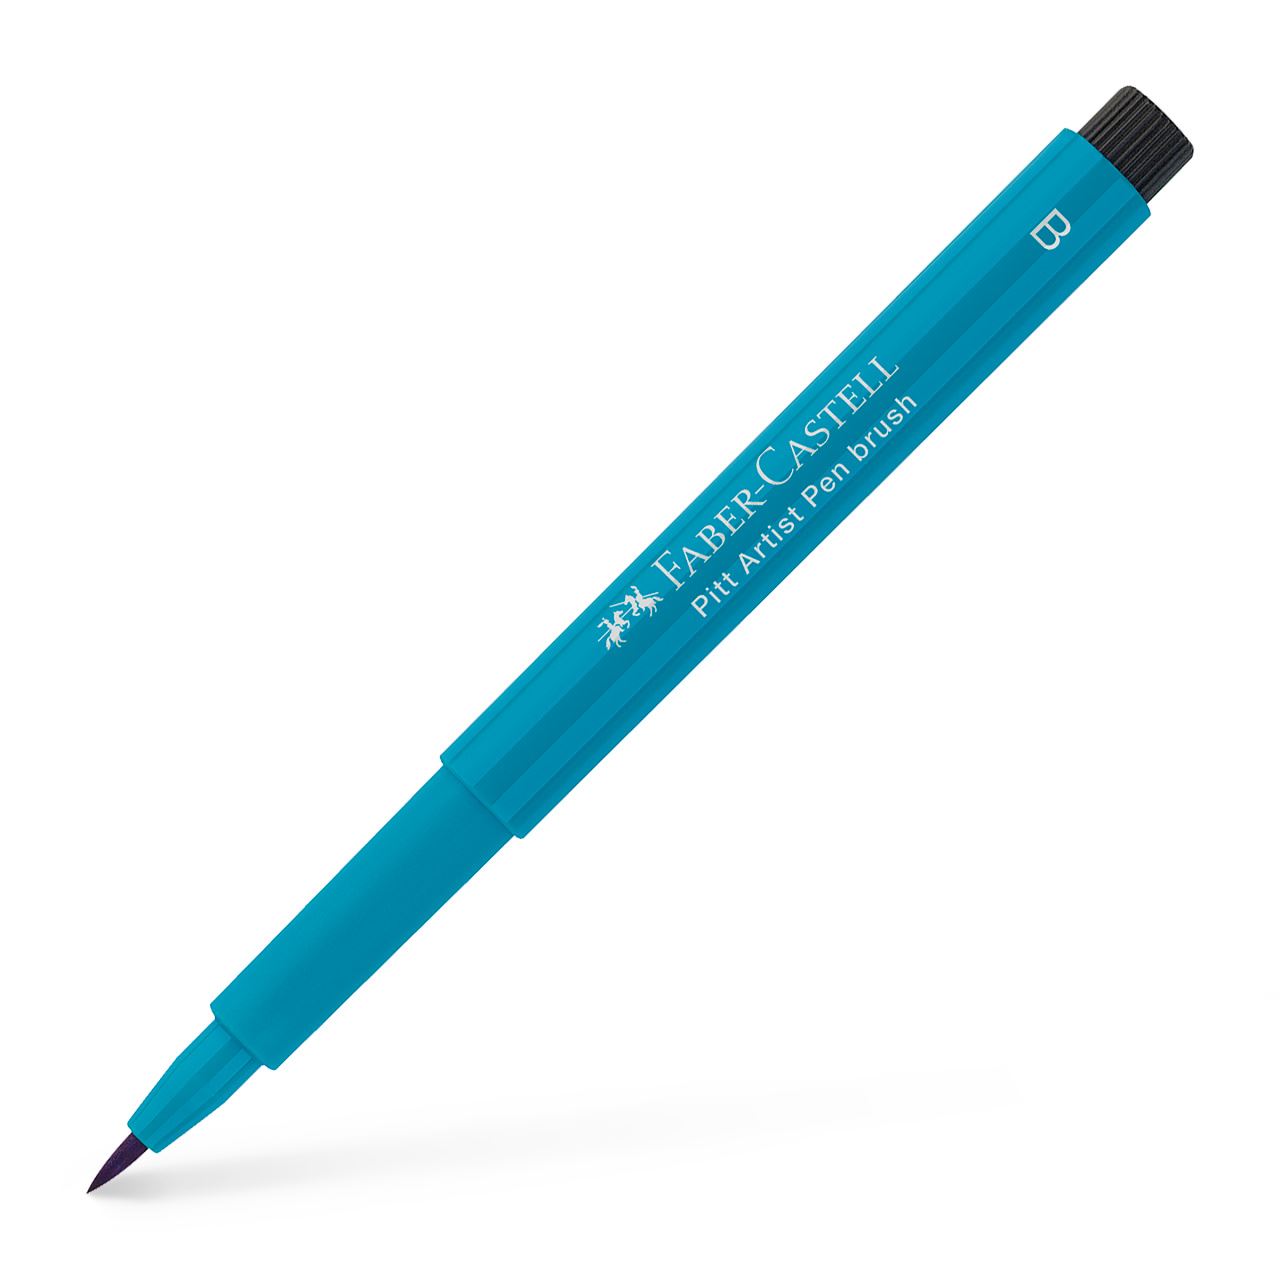 Faber-Castell - Pitt Artist Pen Brush India ink pen, cobalt turquoise